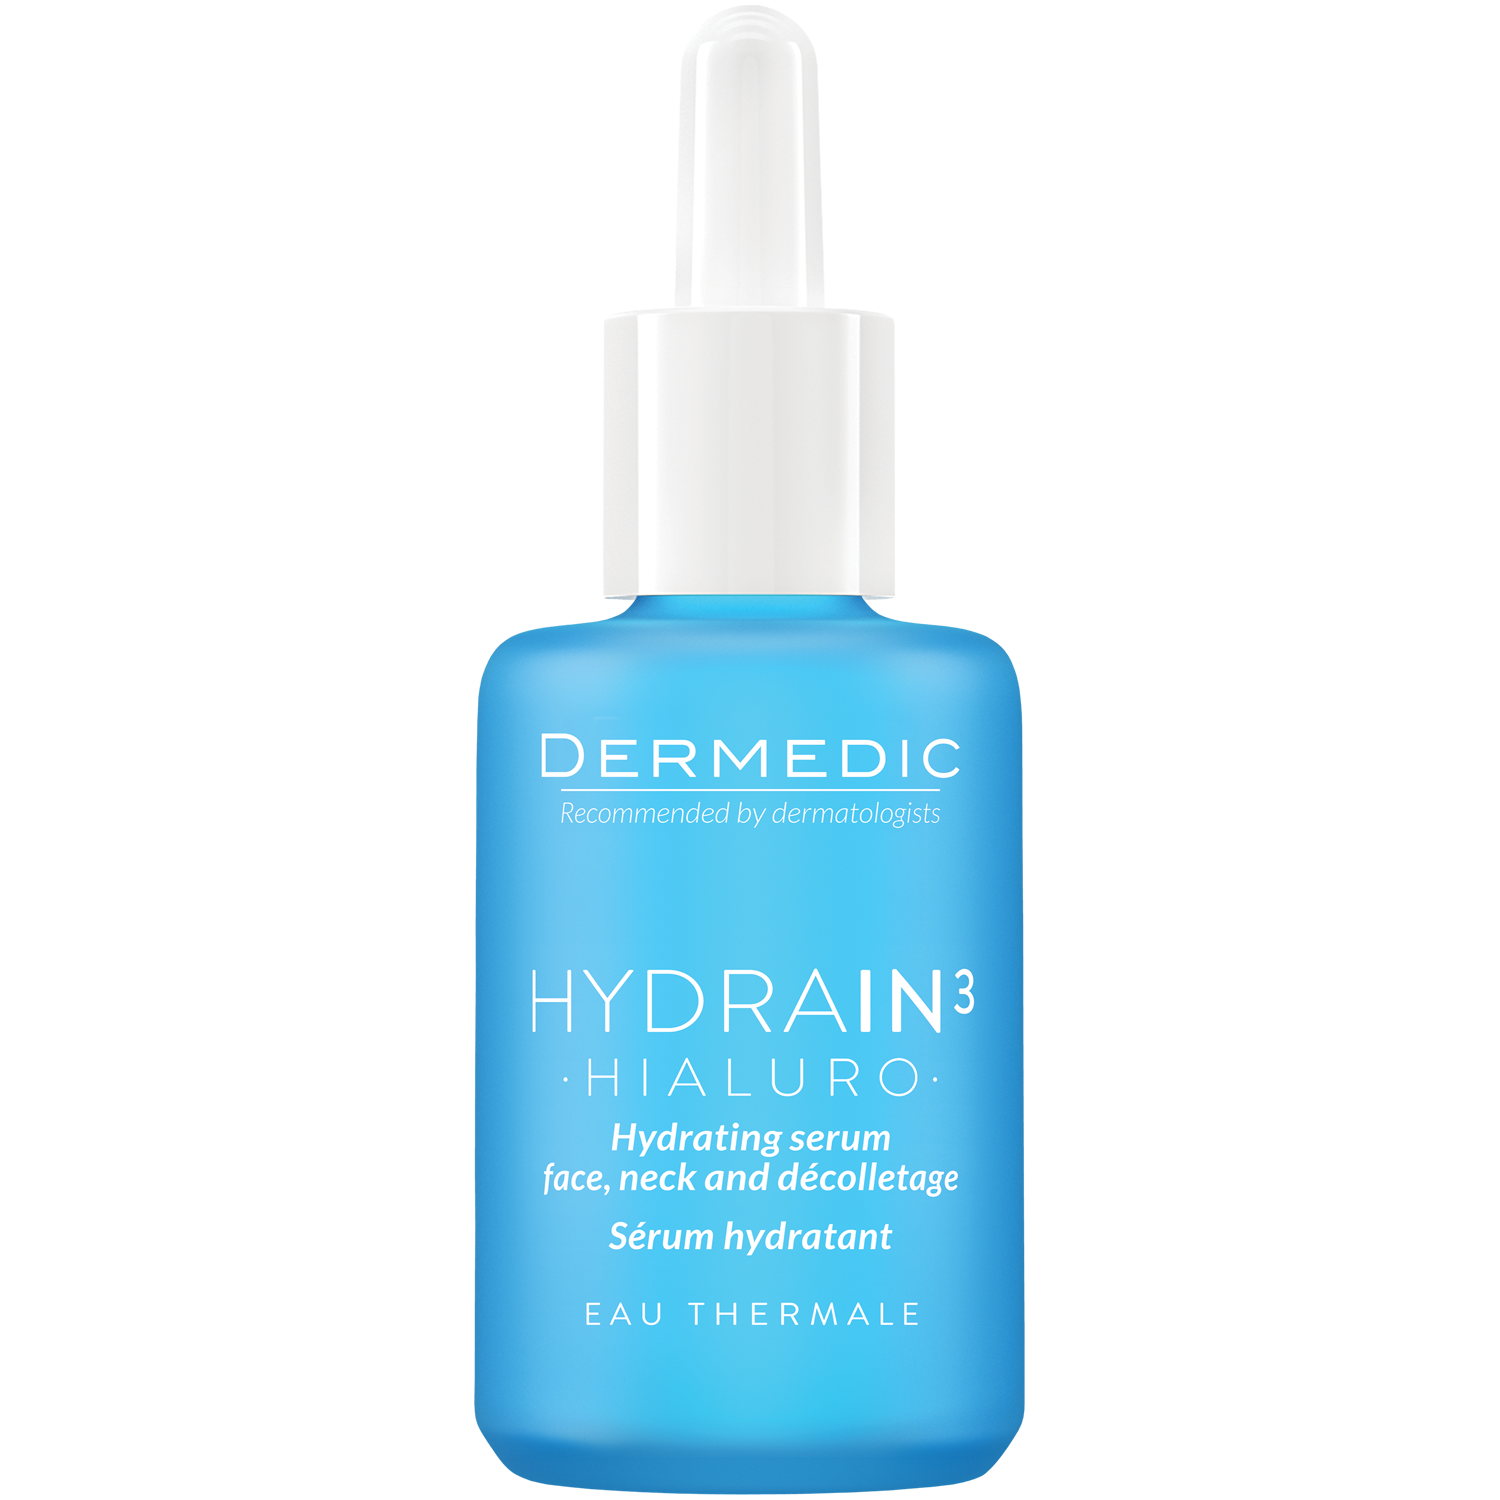 Dermedic Hydrain3 Hialuro увлажняющая сыворотка для лица, шеи и зоны декольте, 30 мл dermedic hydrain3 hialuro увлажняющая сыворотка для лица шеи и декольте 30 мл